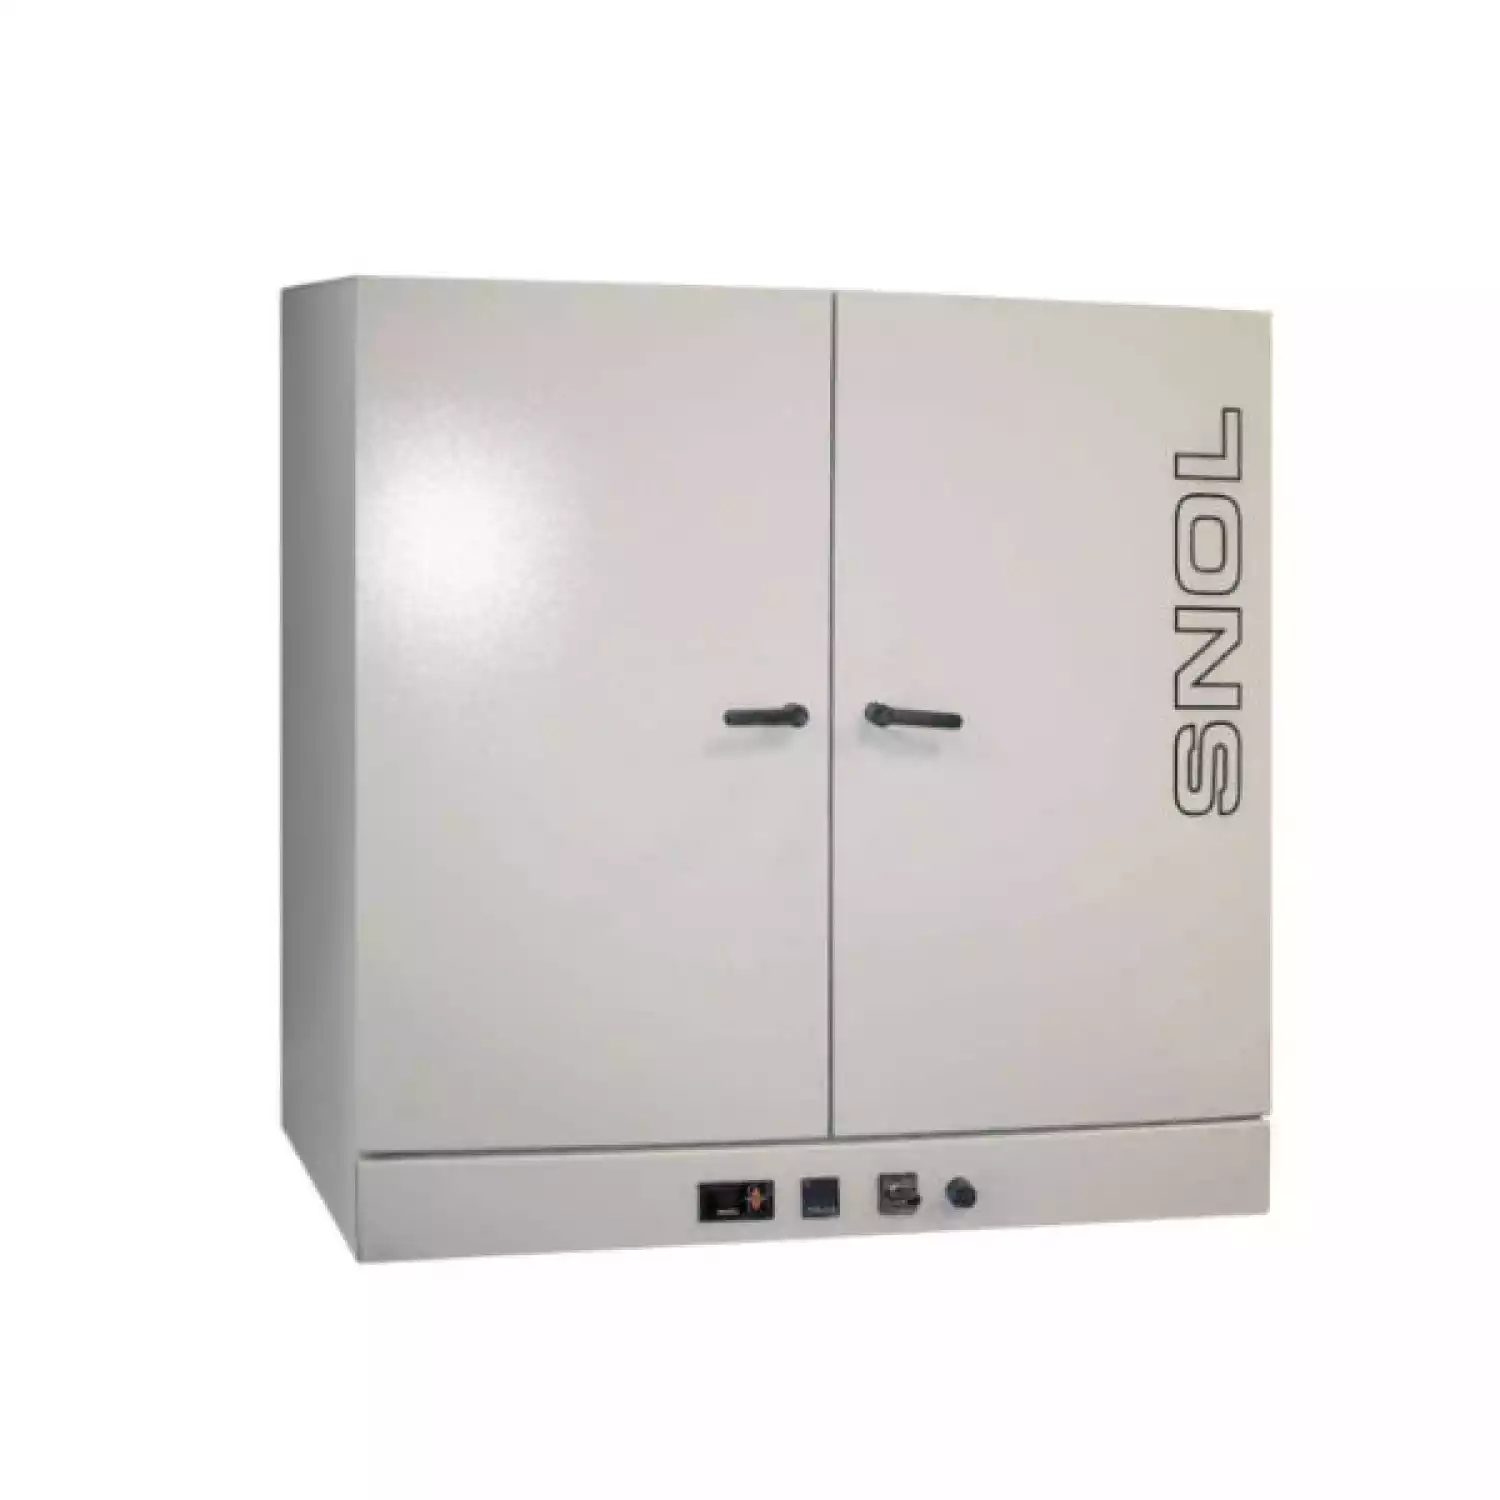 SNOL 420/300 LFN шкаф сушильный (420 л, нержавеющая сталь, электронный) - 1